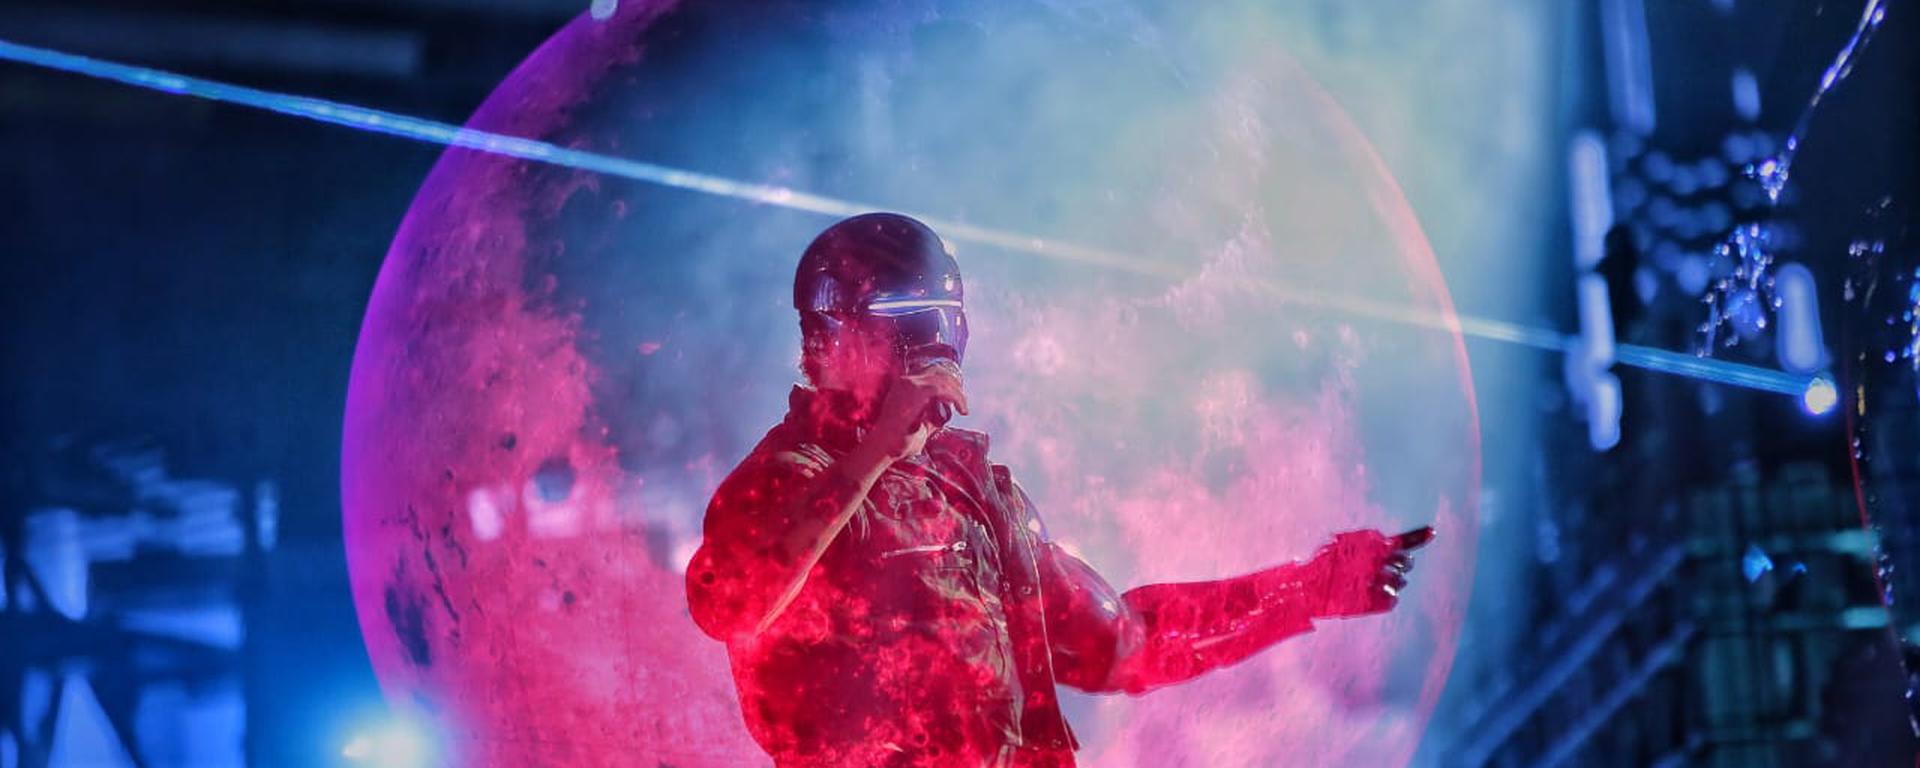 The Weeknd en Lima: el efectivo show de, quizá, ¿la última megaestrella que cante en el Perú? | CRÓNICA